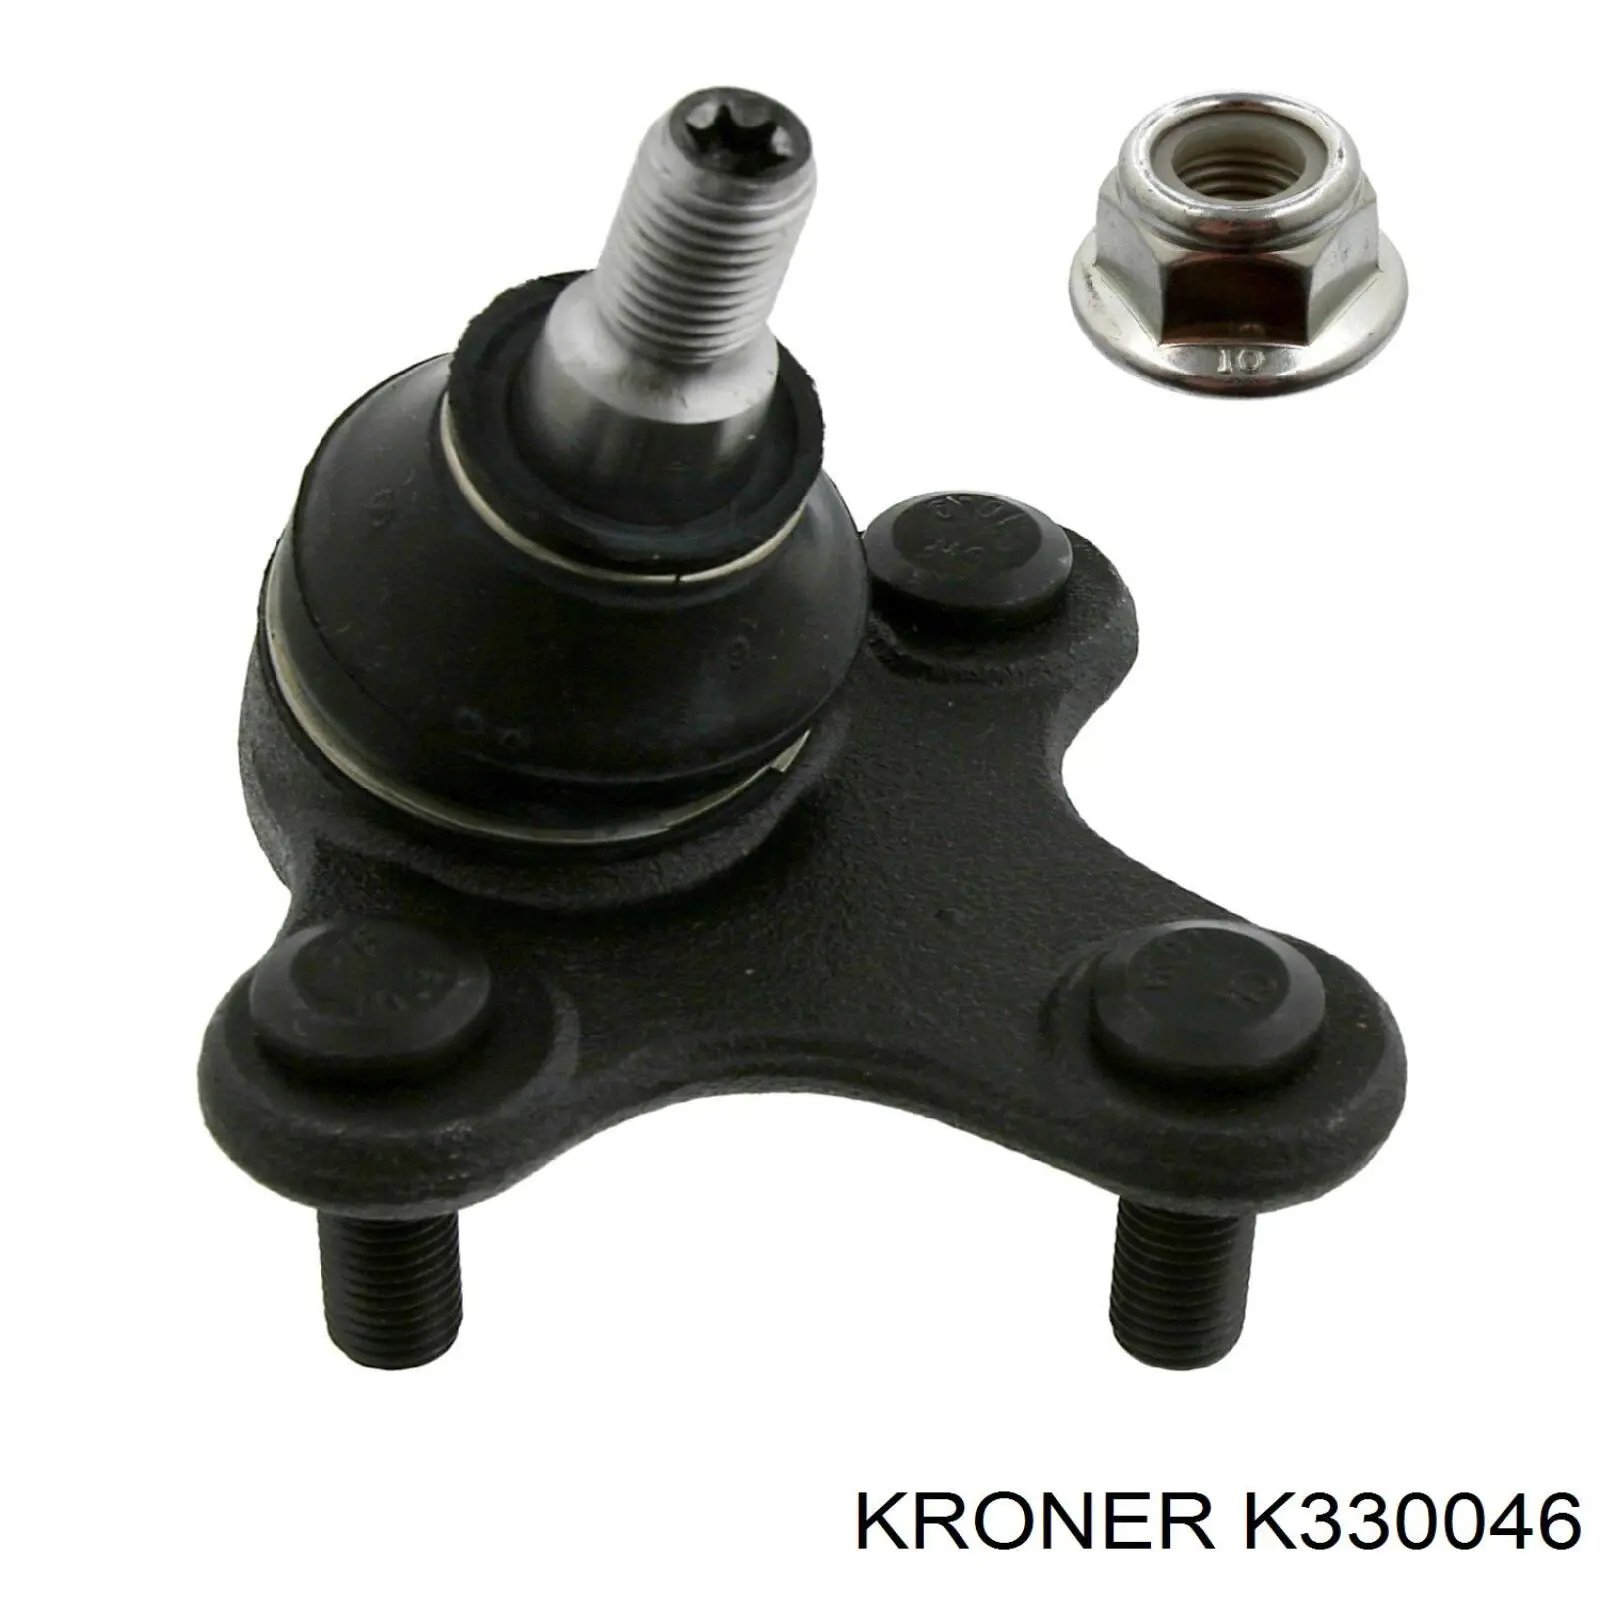 K330046 Kroner шаровая опора нижняя левая